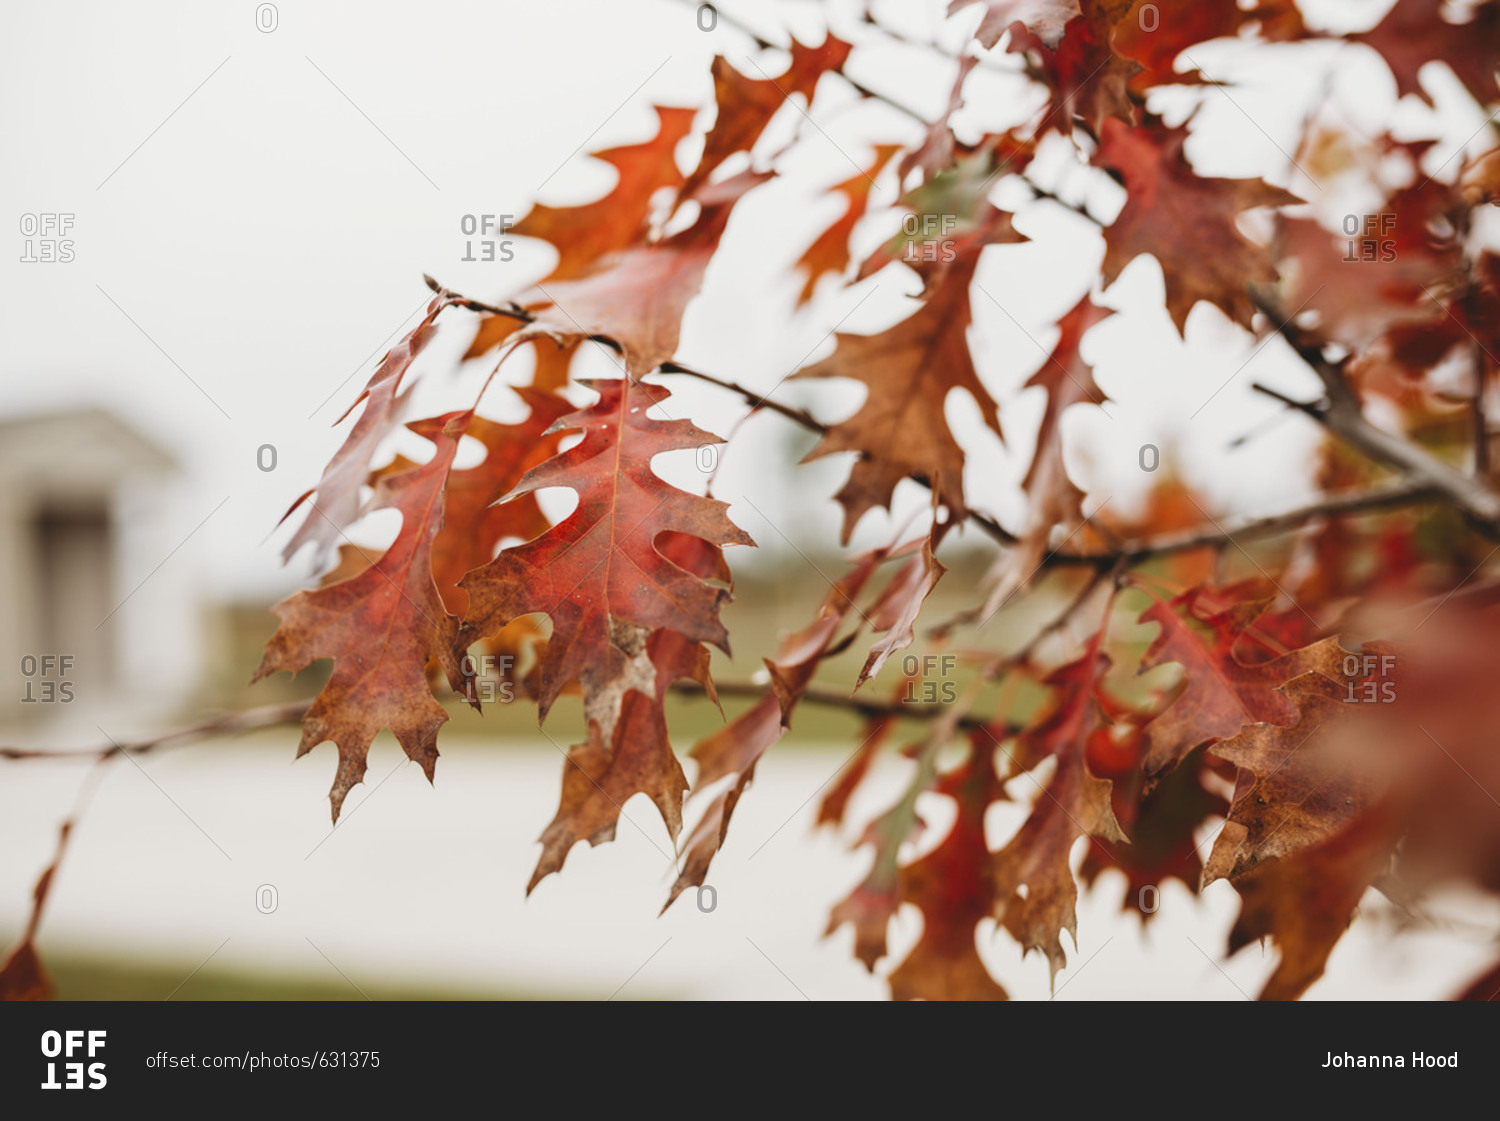 Red oak leaves on tree branch